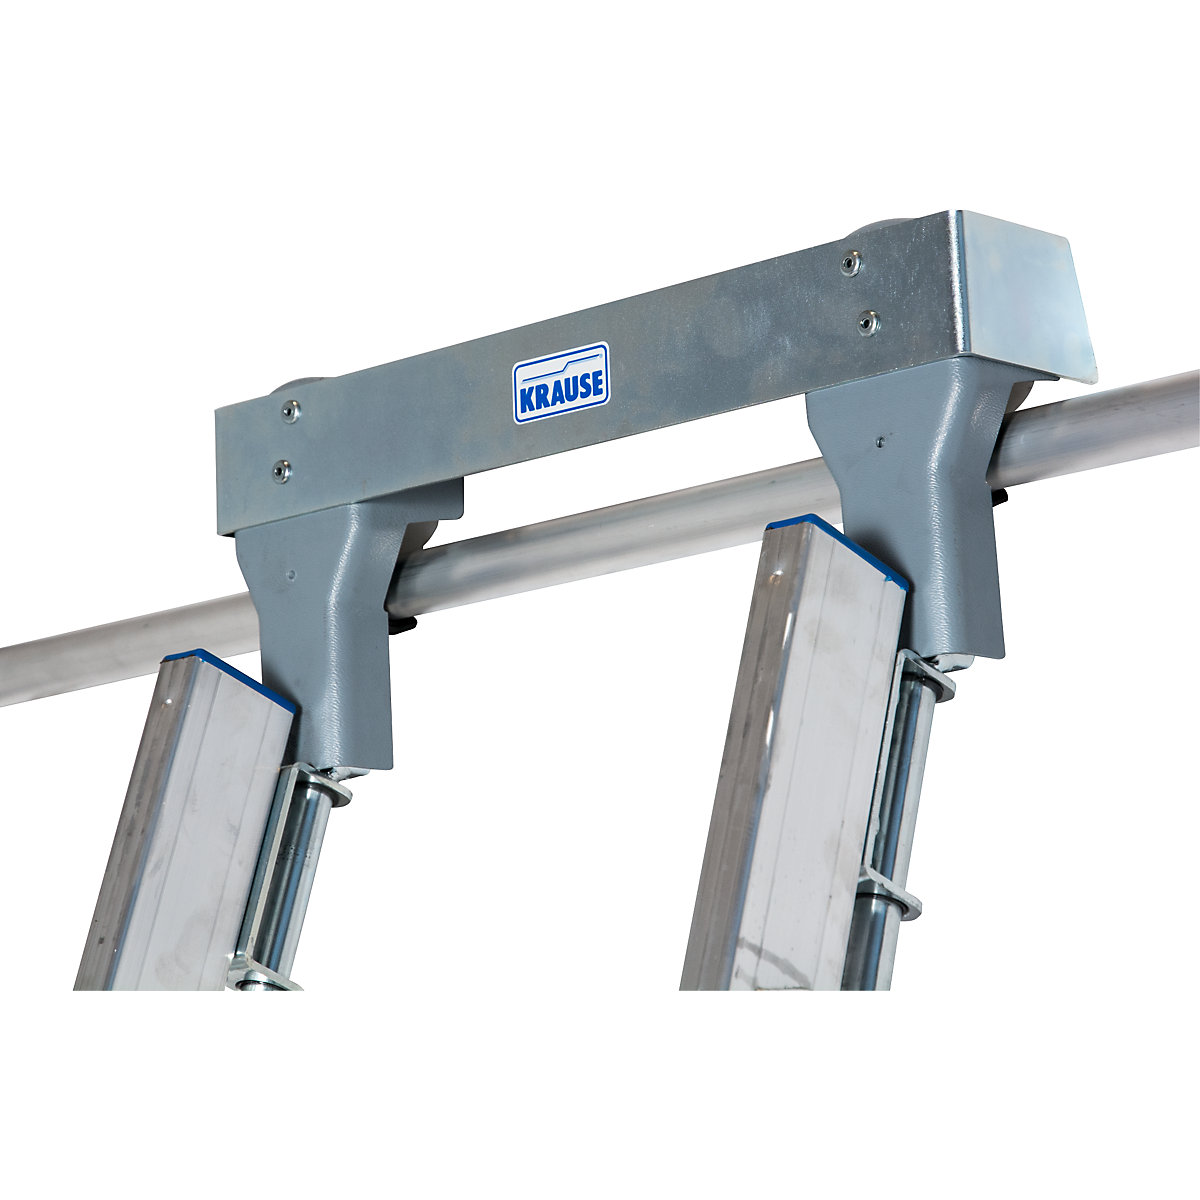 KRAUSE – Step shelf ladder (Product illustration 11)